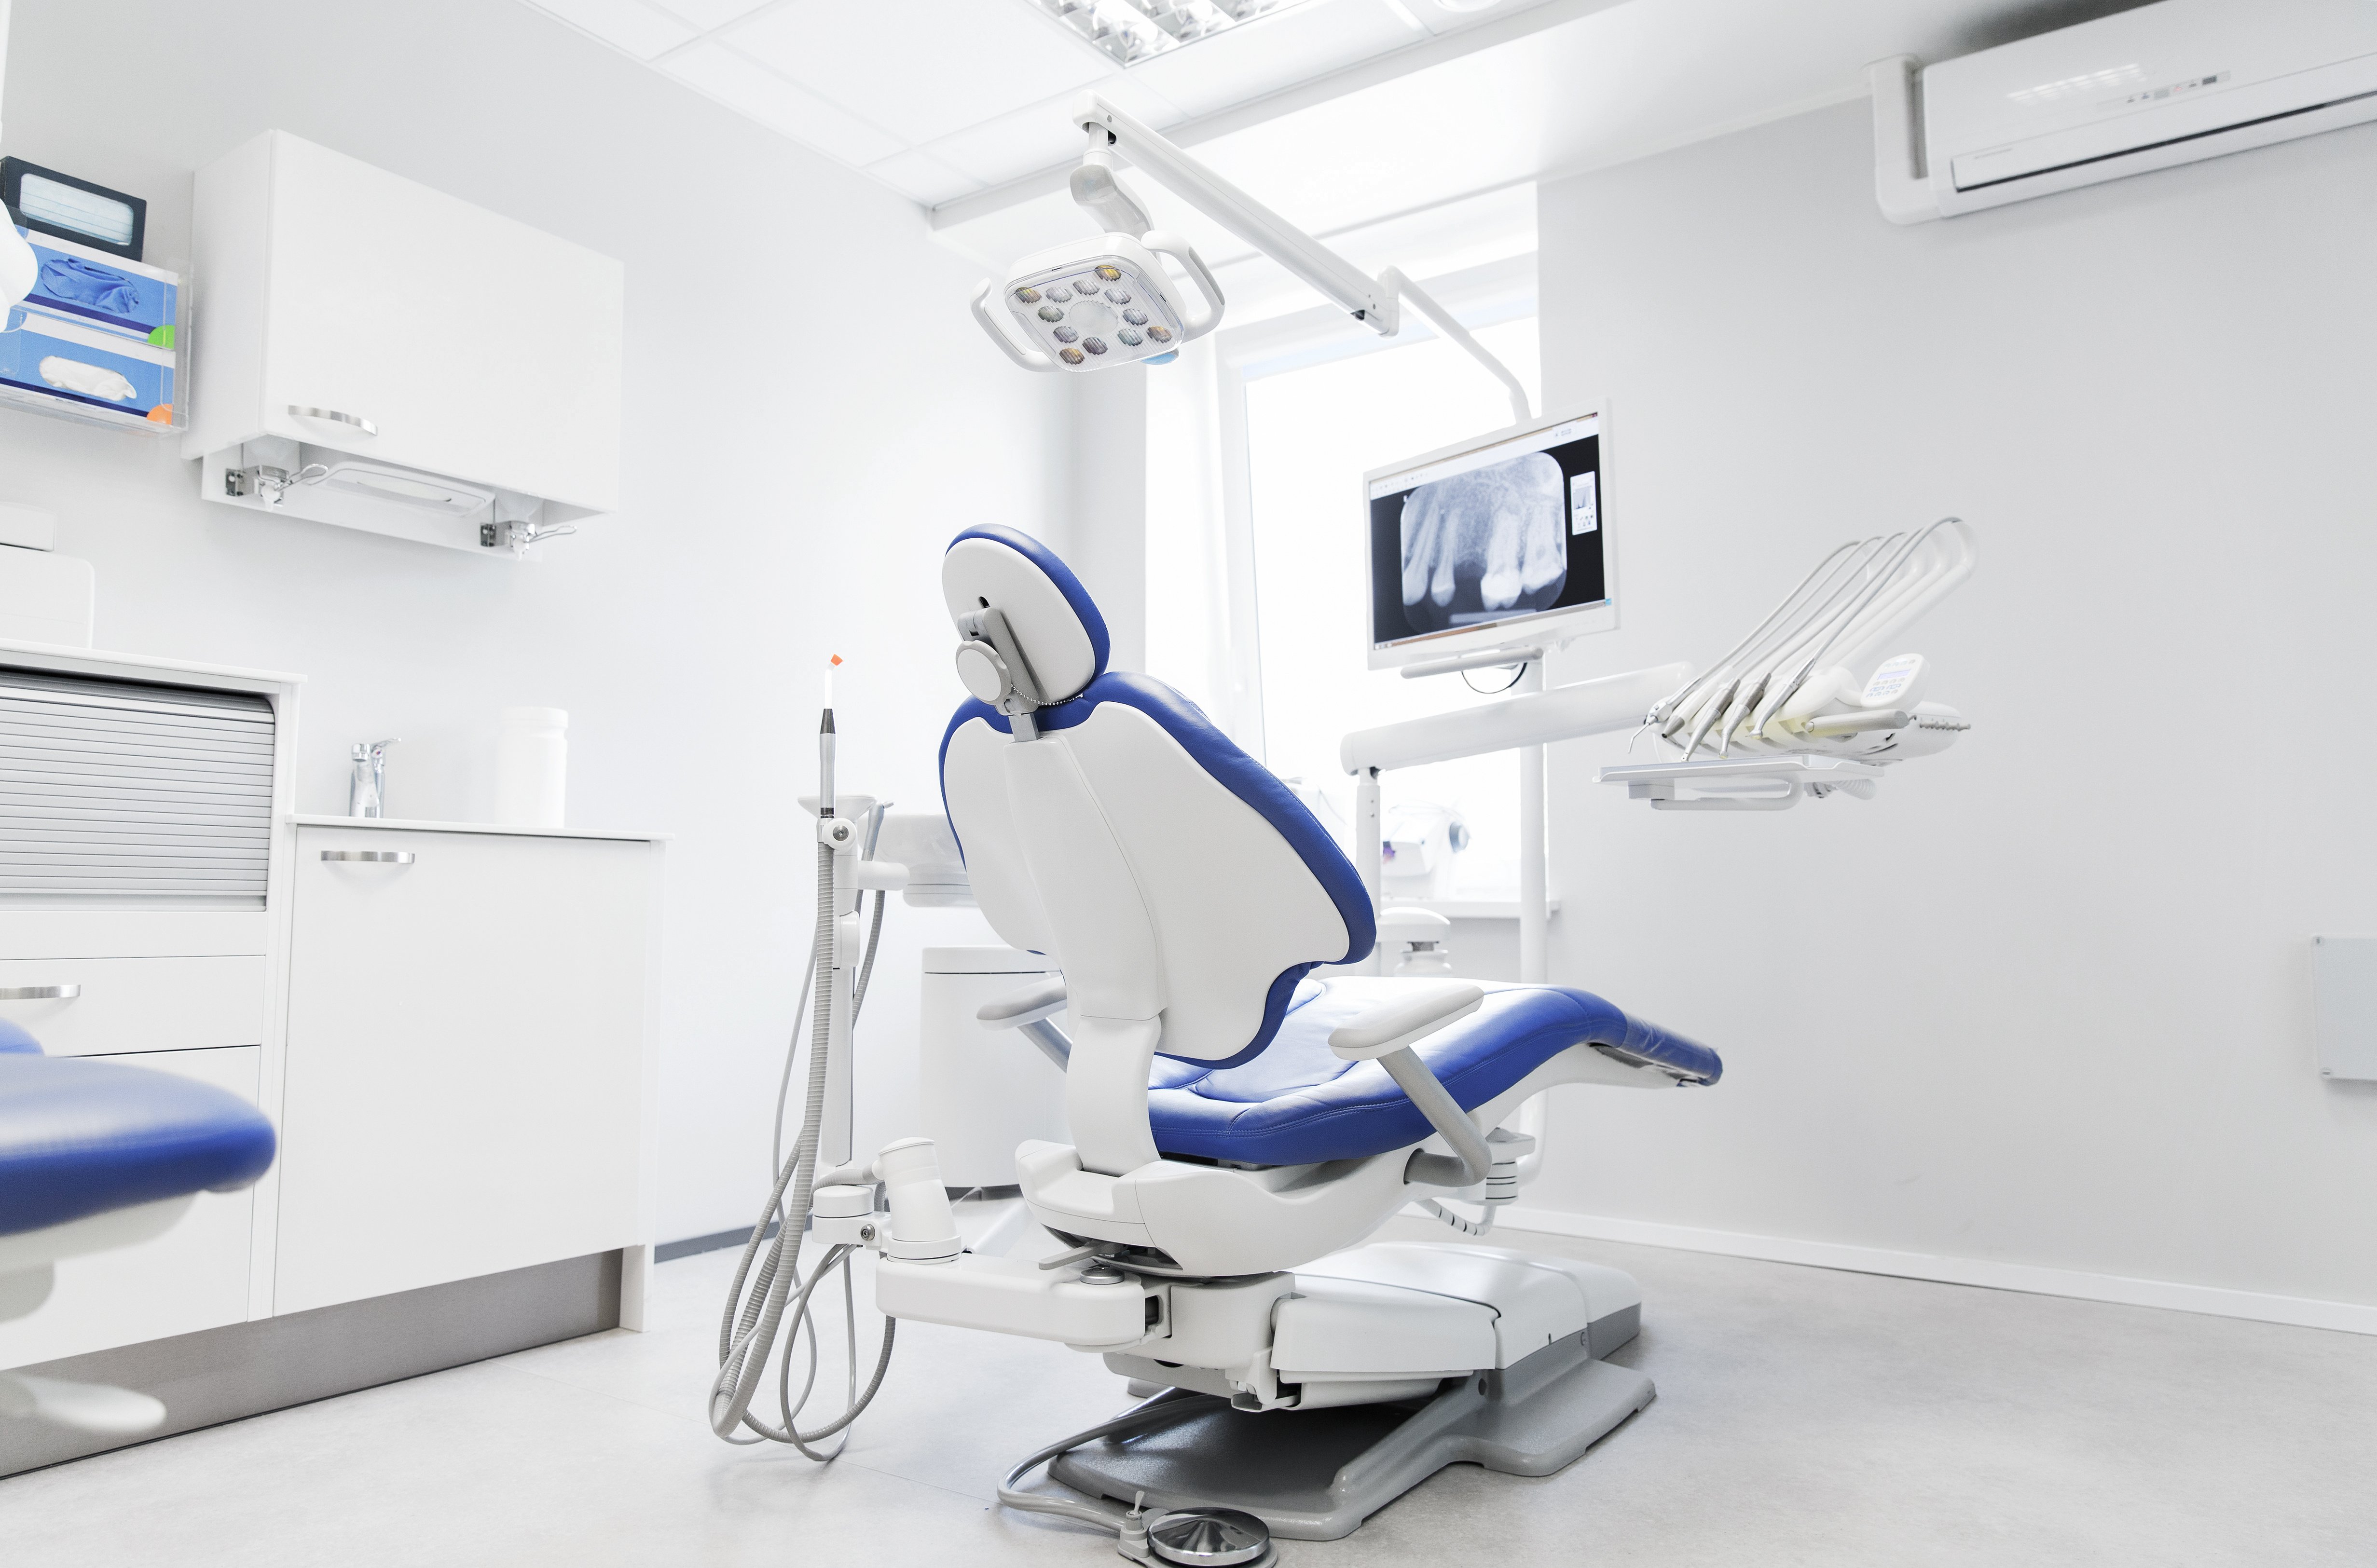 Dental Technology & Equipment for Starting Your Dental Practice